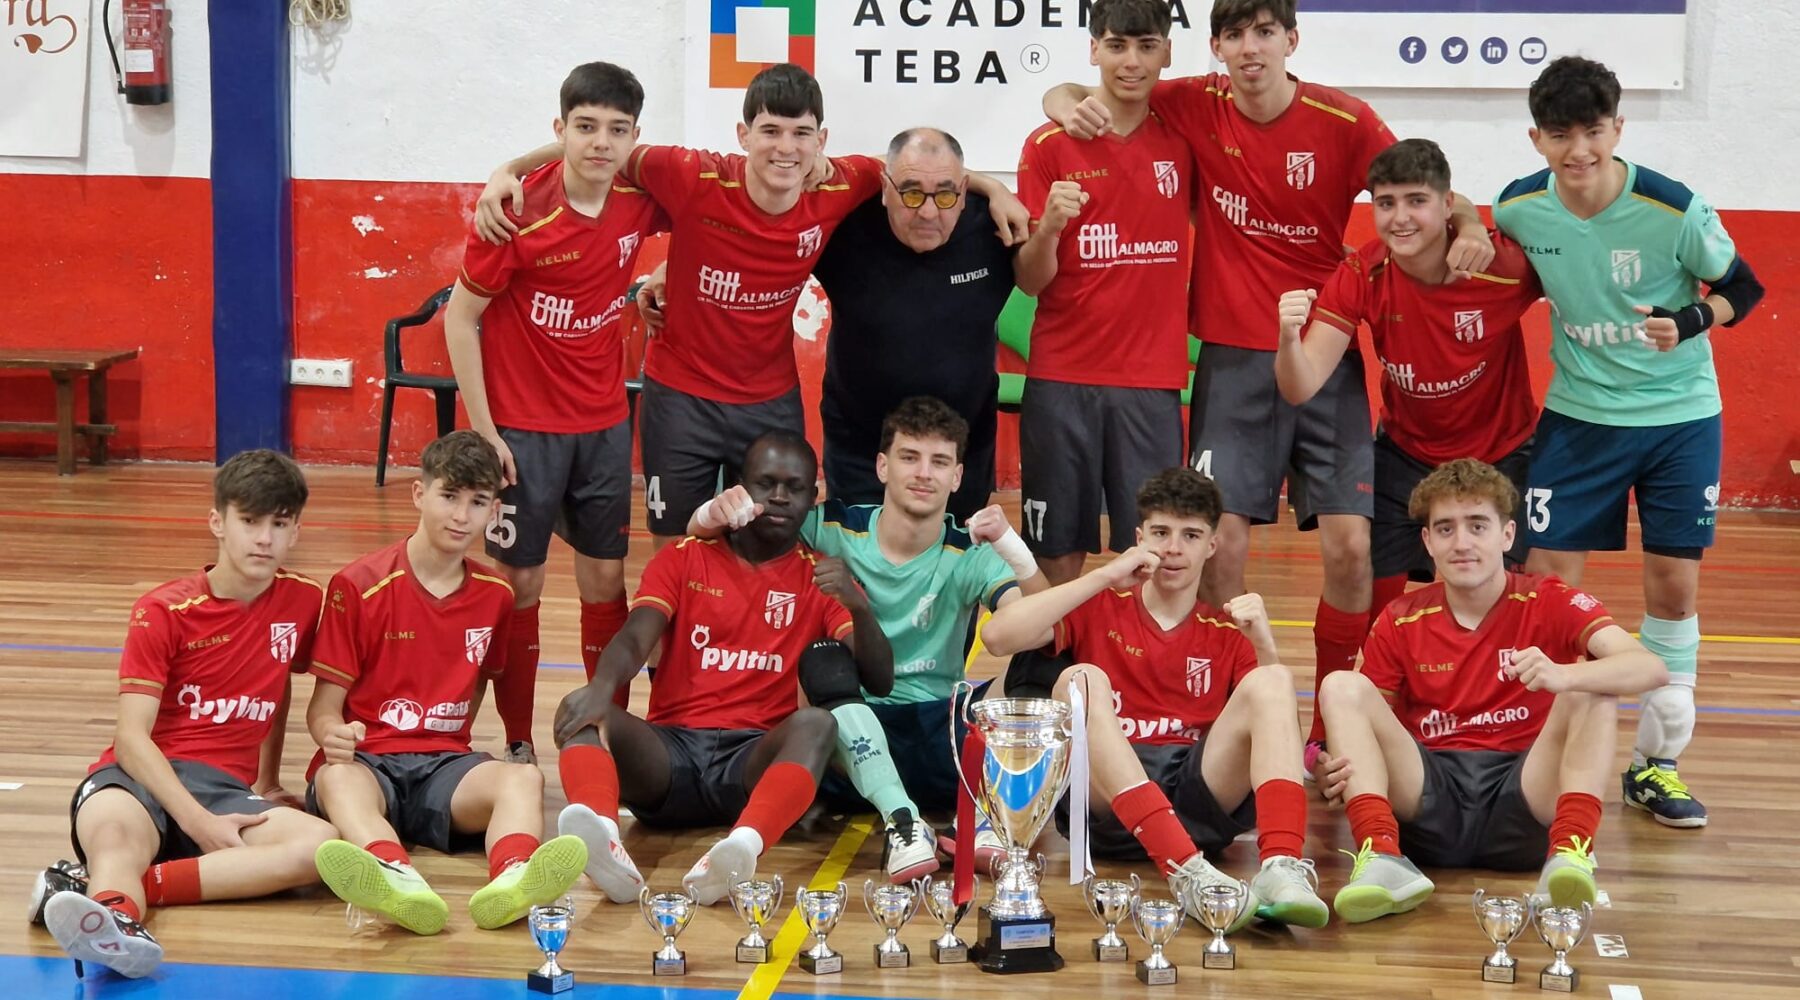 El juvenil ‘B’ PYLTIN Albolote FS finaliza la temporada como campeón de liga en Segunda Andaluza